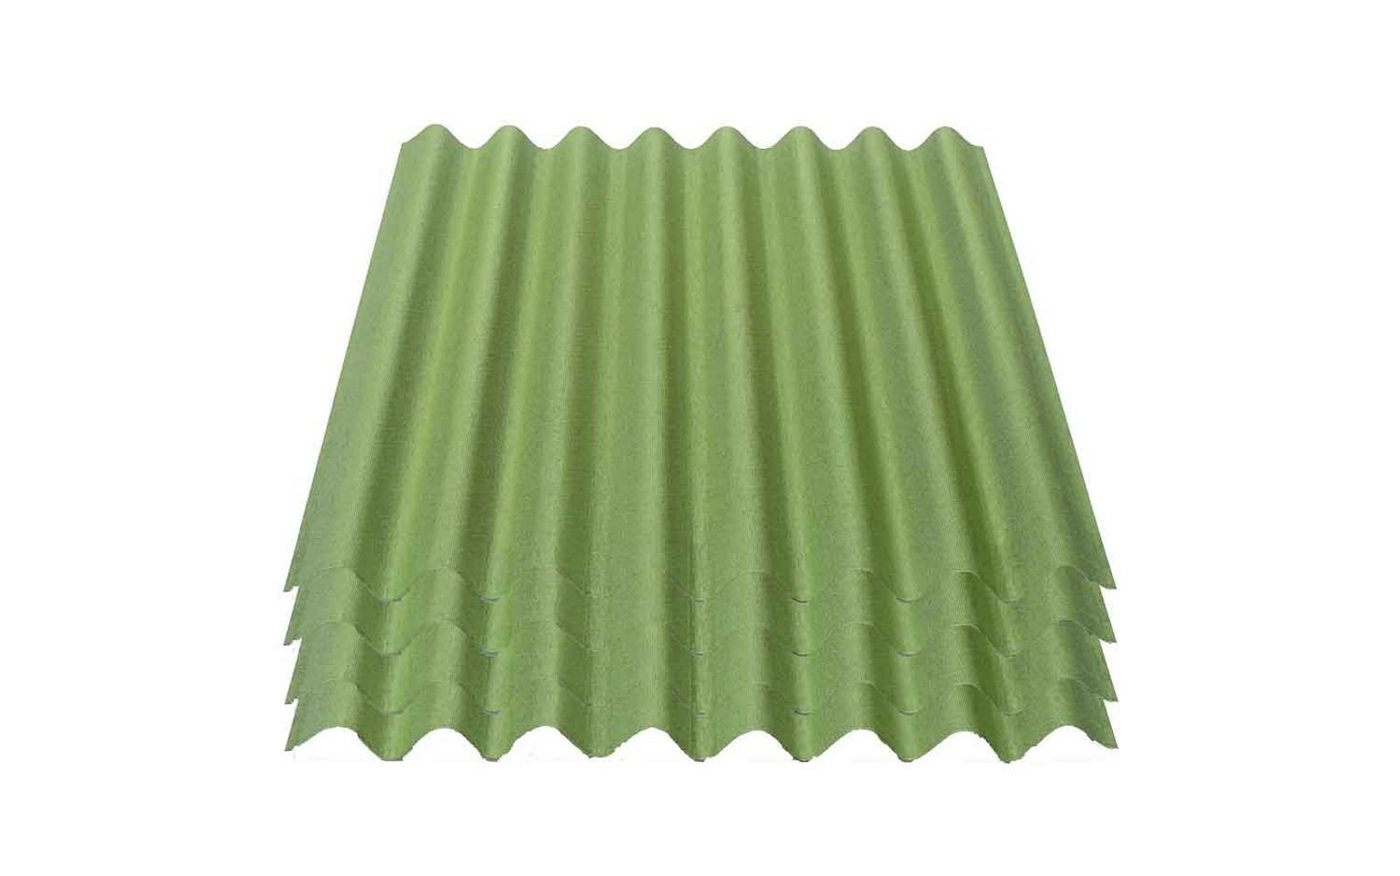 Onduline Dachpappe Onduline Easyline Dachplatte Wandplatte Bitumenwellplatten Wellplatte 4x0,76m² - grün, wellig, 3.04 m² pro Paket, (4-St) von Onduline